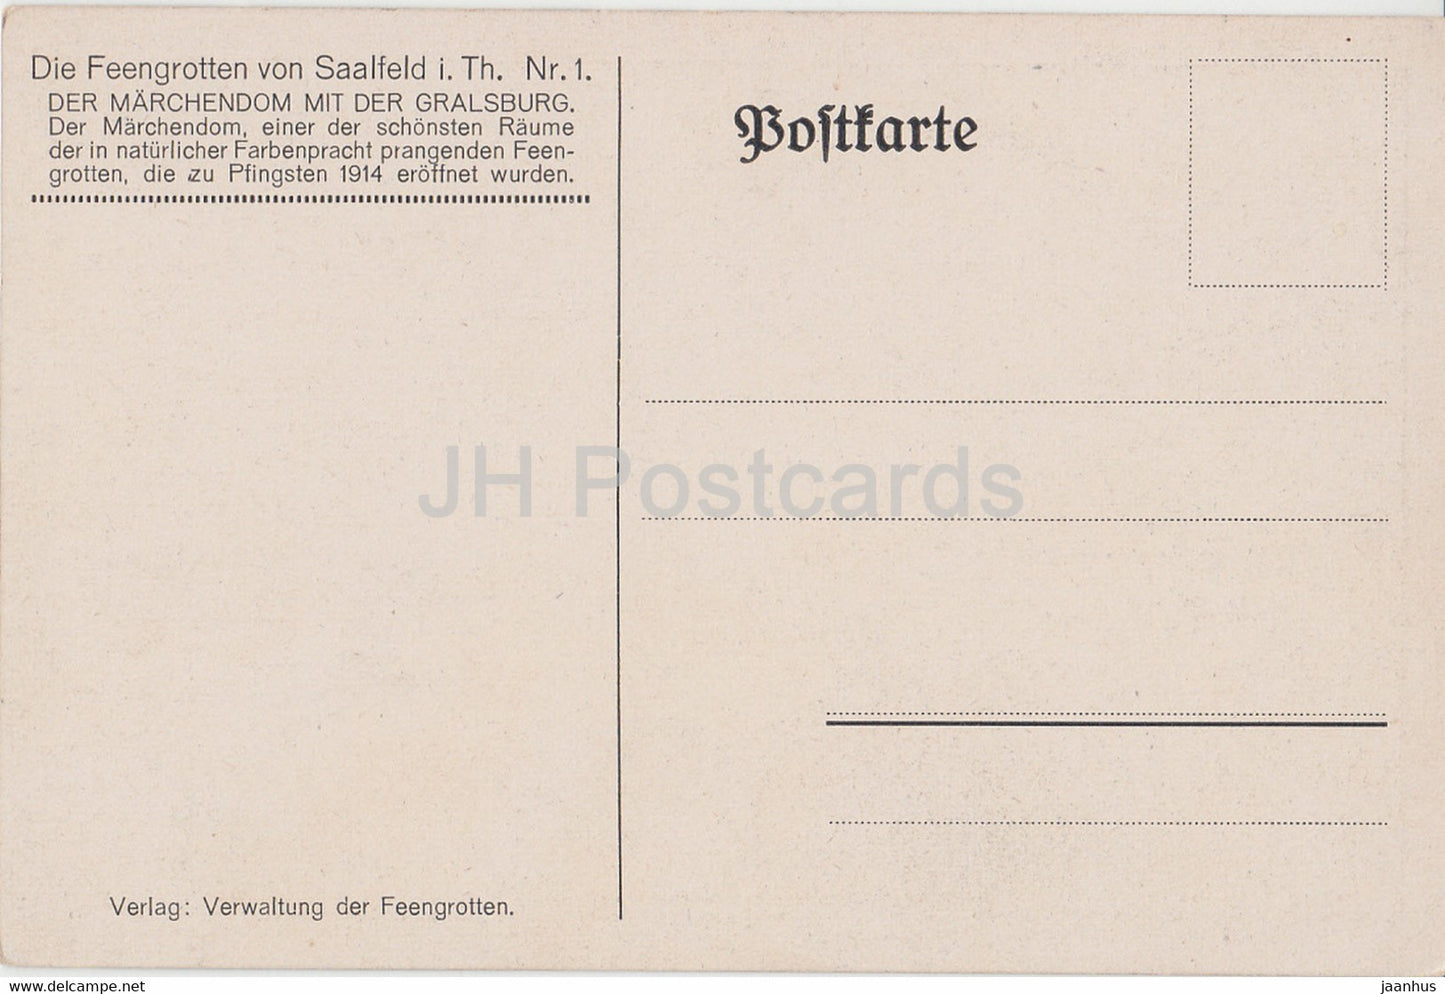 Feengrotten von Saalfeld in Th - Marchendom - Höhle - 1 - alte Postkarte - Deutschland - unbenutzt